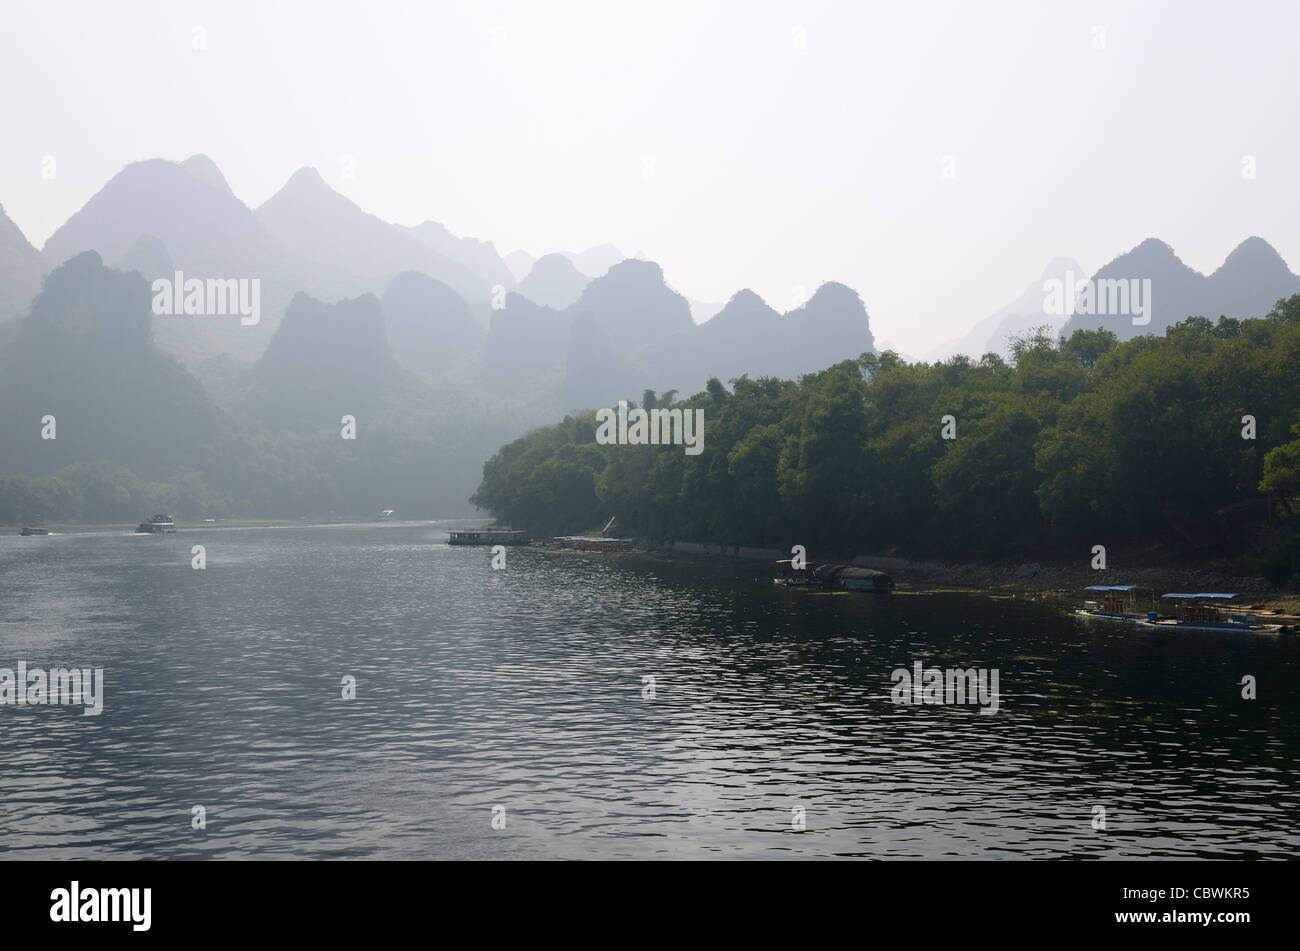 Les bateaux d'excursion sur la rivière Li Guangxi Chine Avec montagnes karstiques Dome dans la brume Banque D'Images